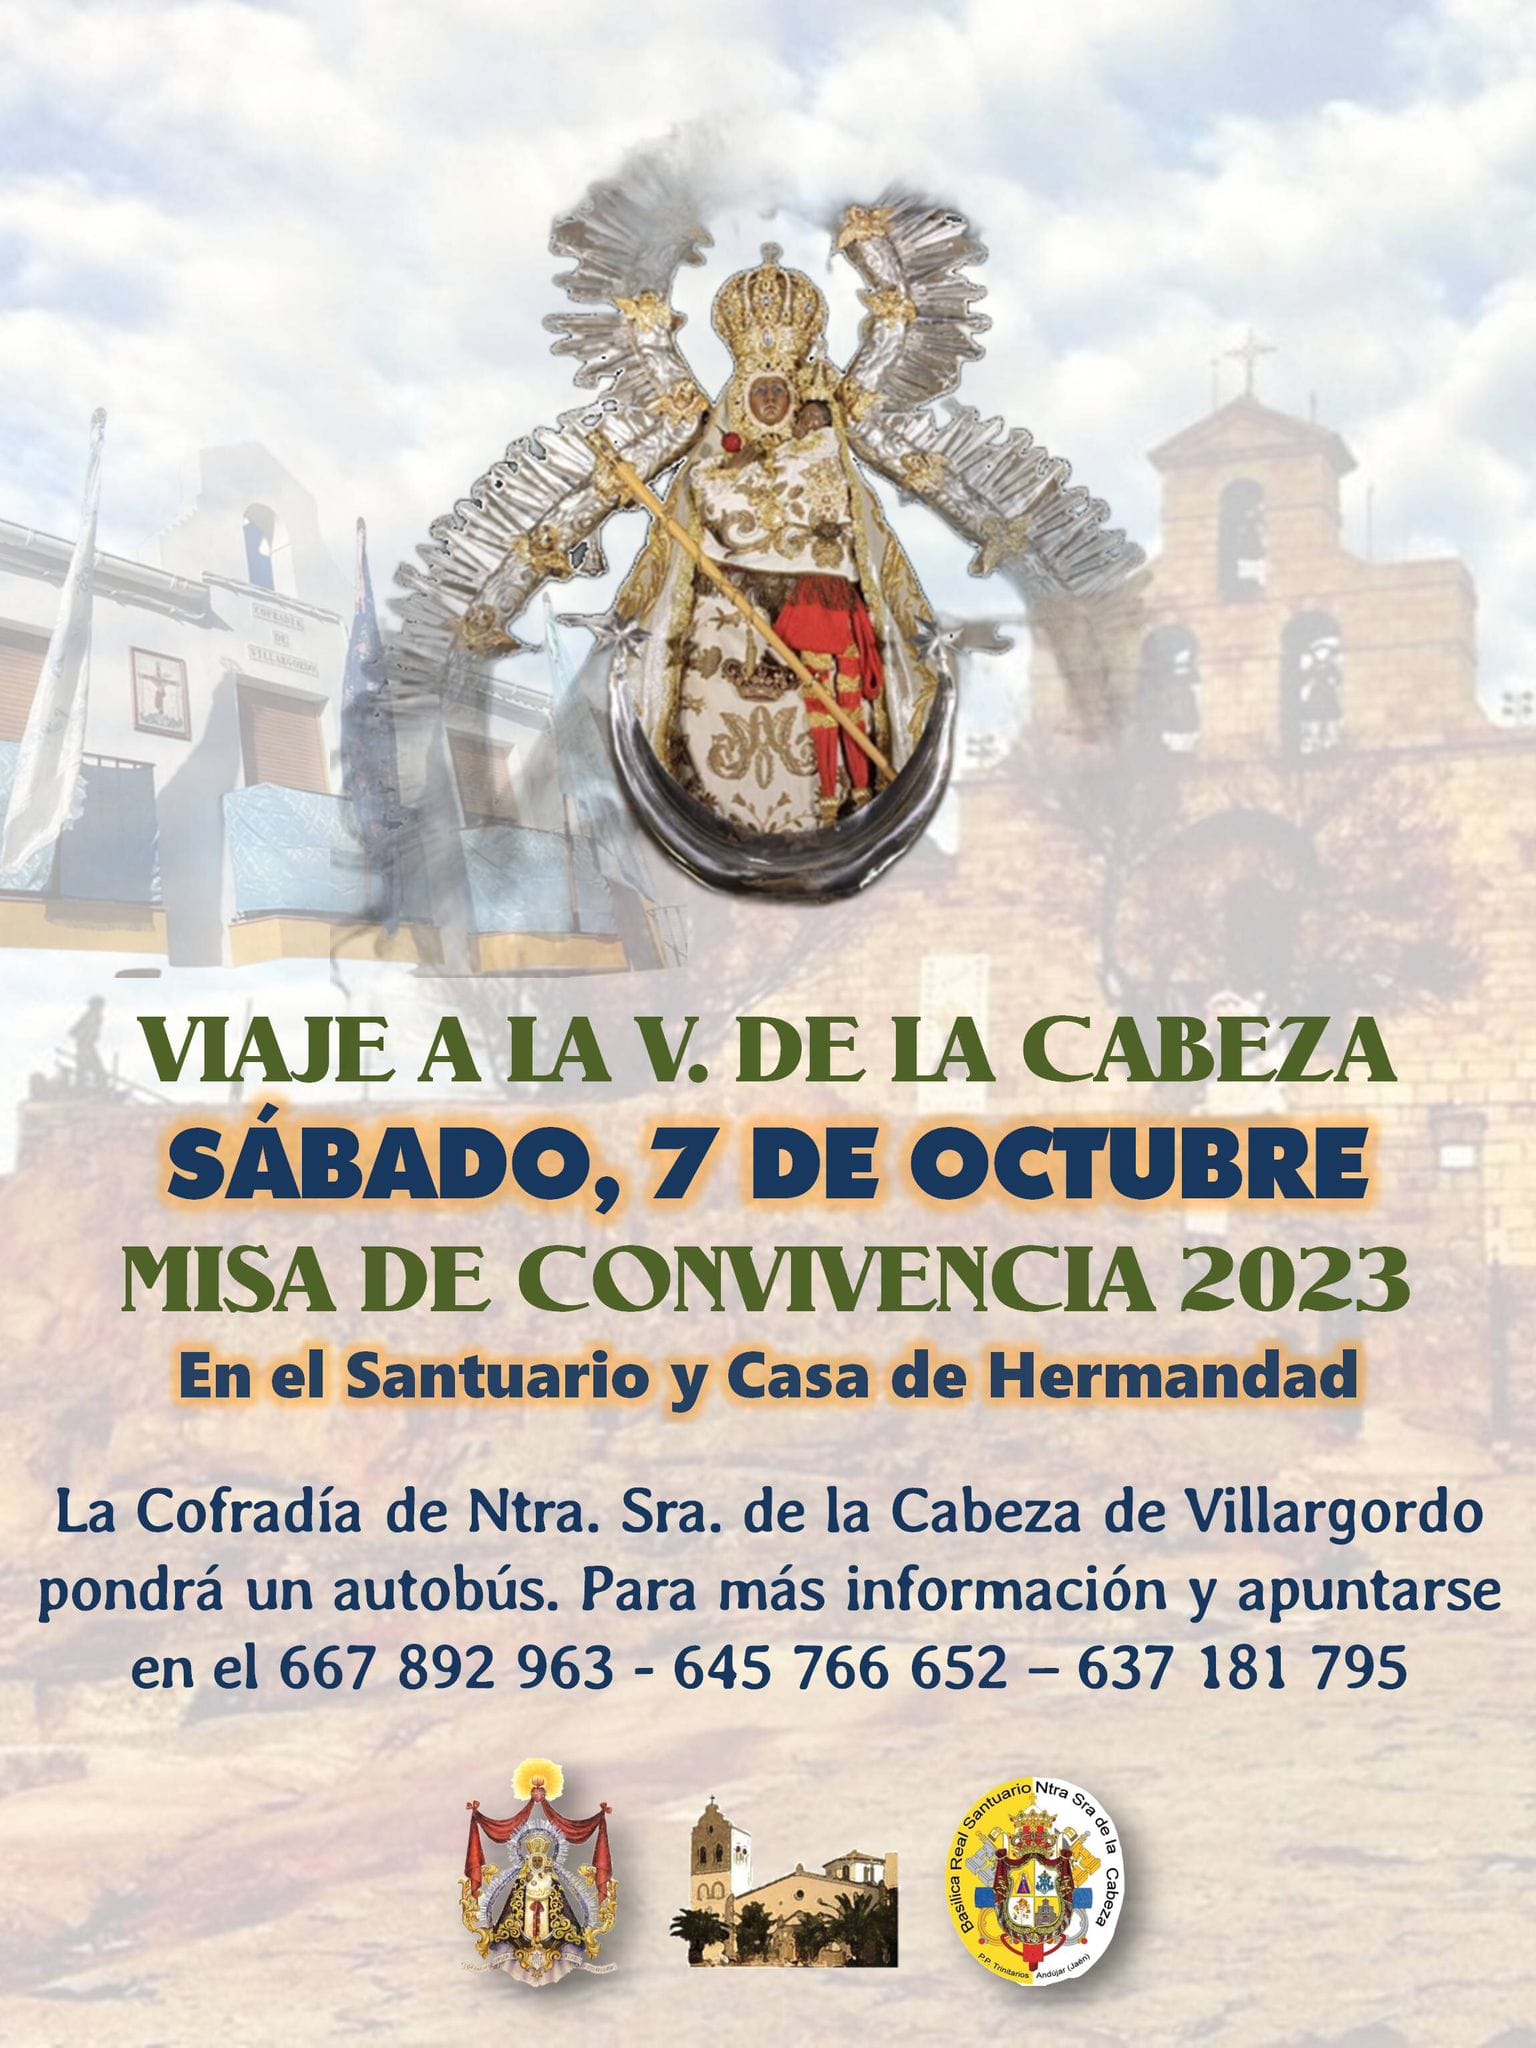 Viaje a la Virgen de la Cabeza el 7 de octubre